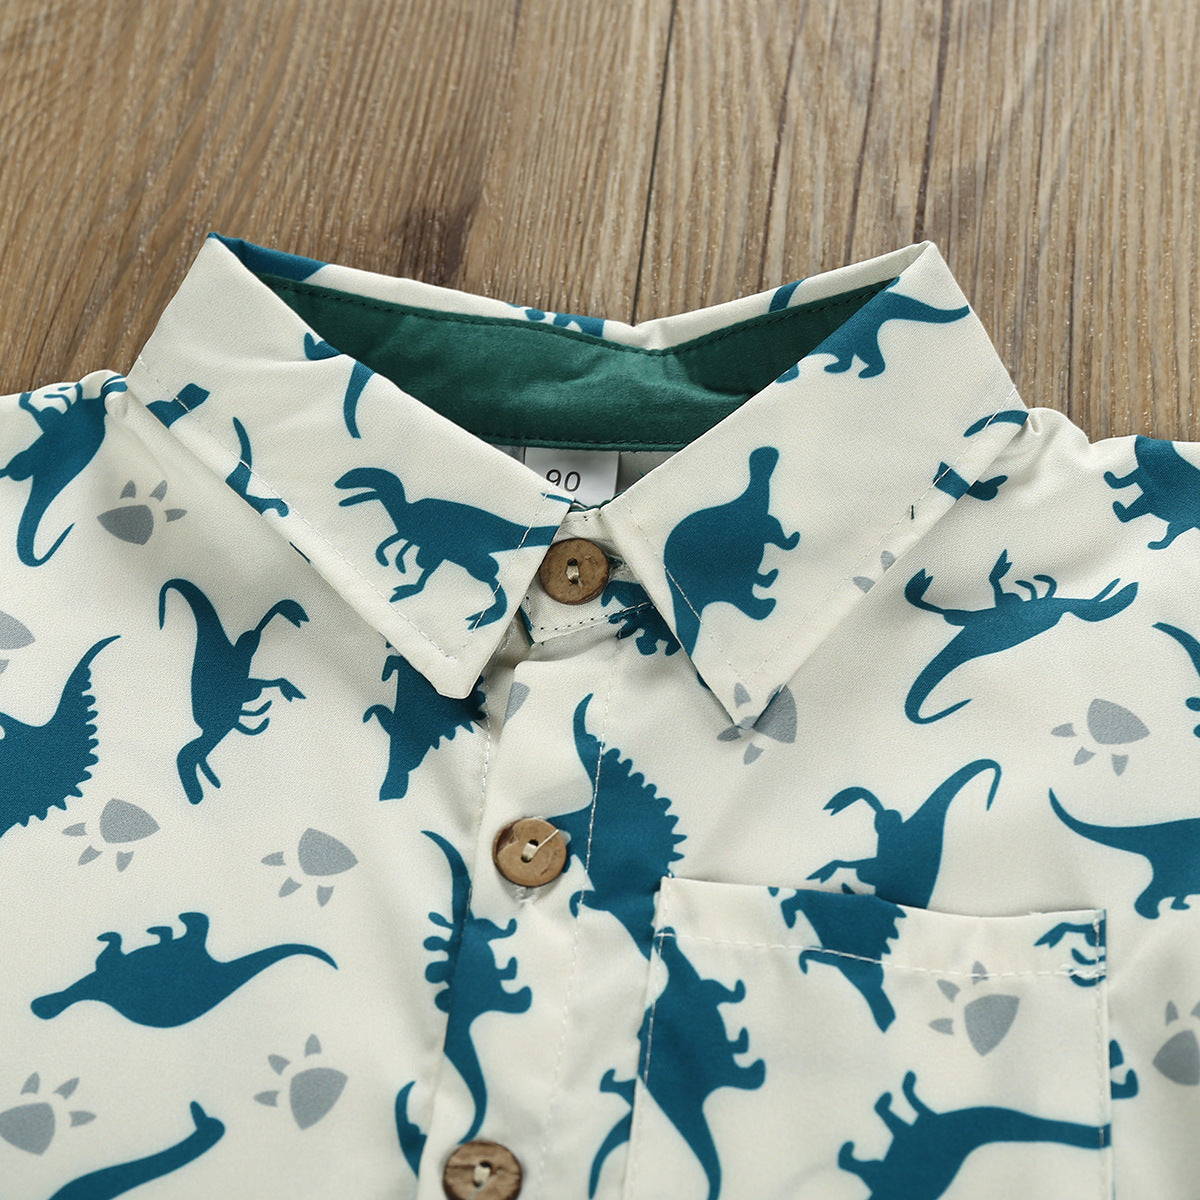 Boys' Dinosaur Print Summer Hawaiian Outfit: Shirt And Pants